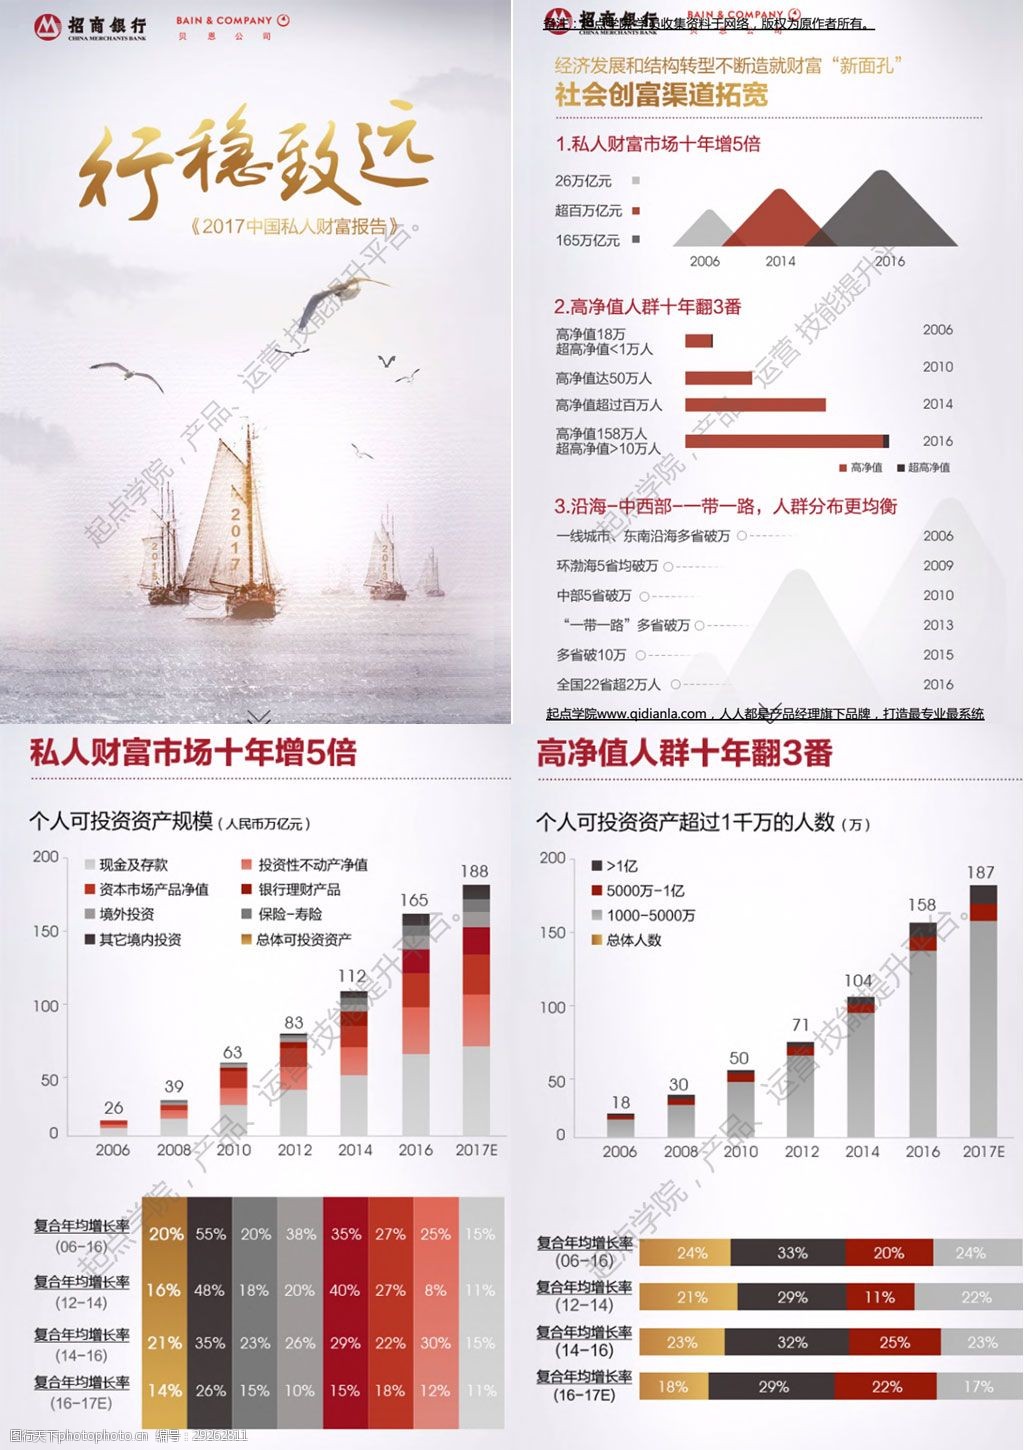 贝恩公司&招商银行:2017中国私人财富报告